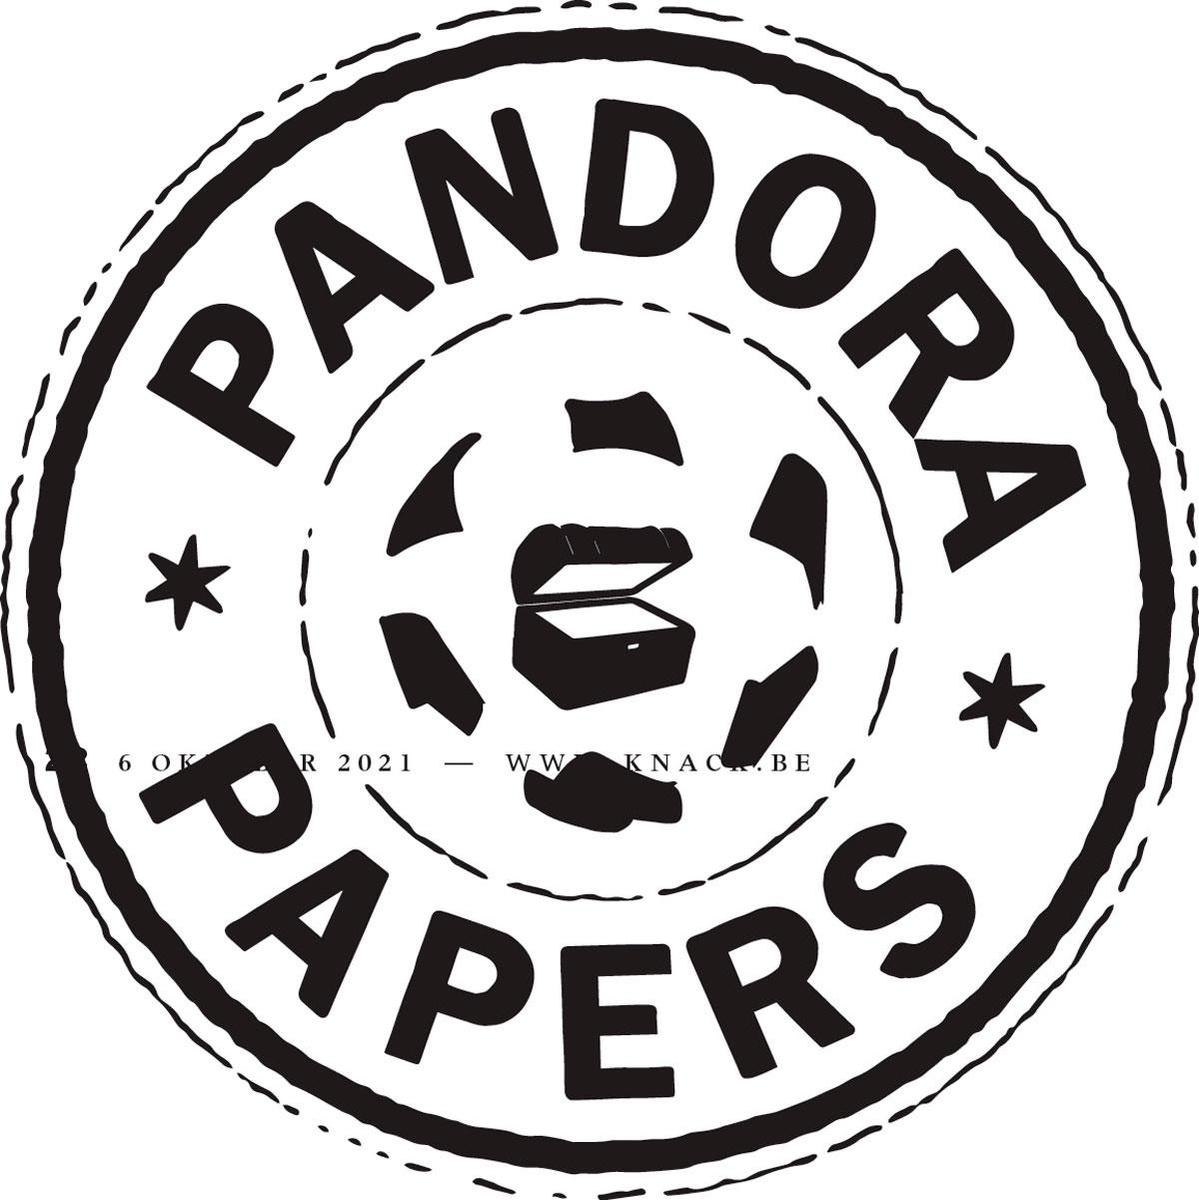 Pandora papers